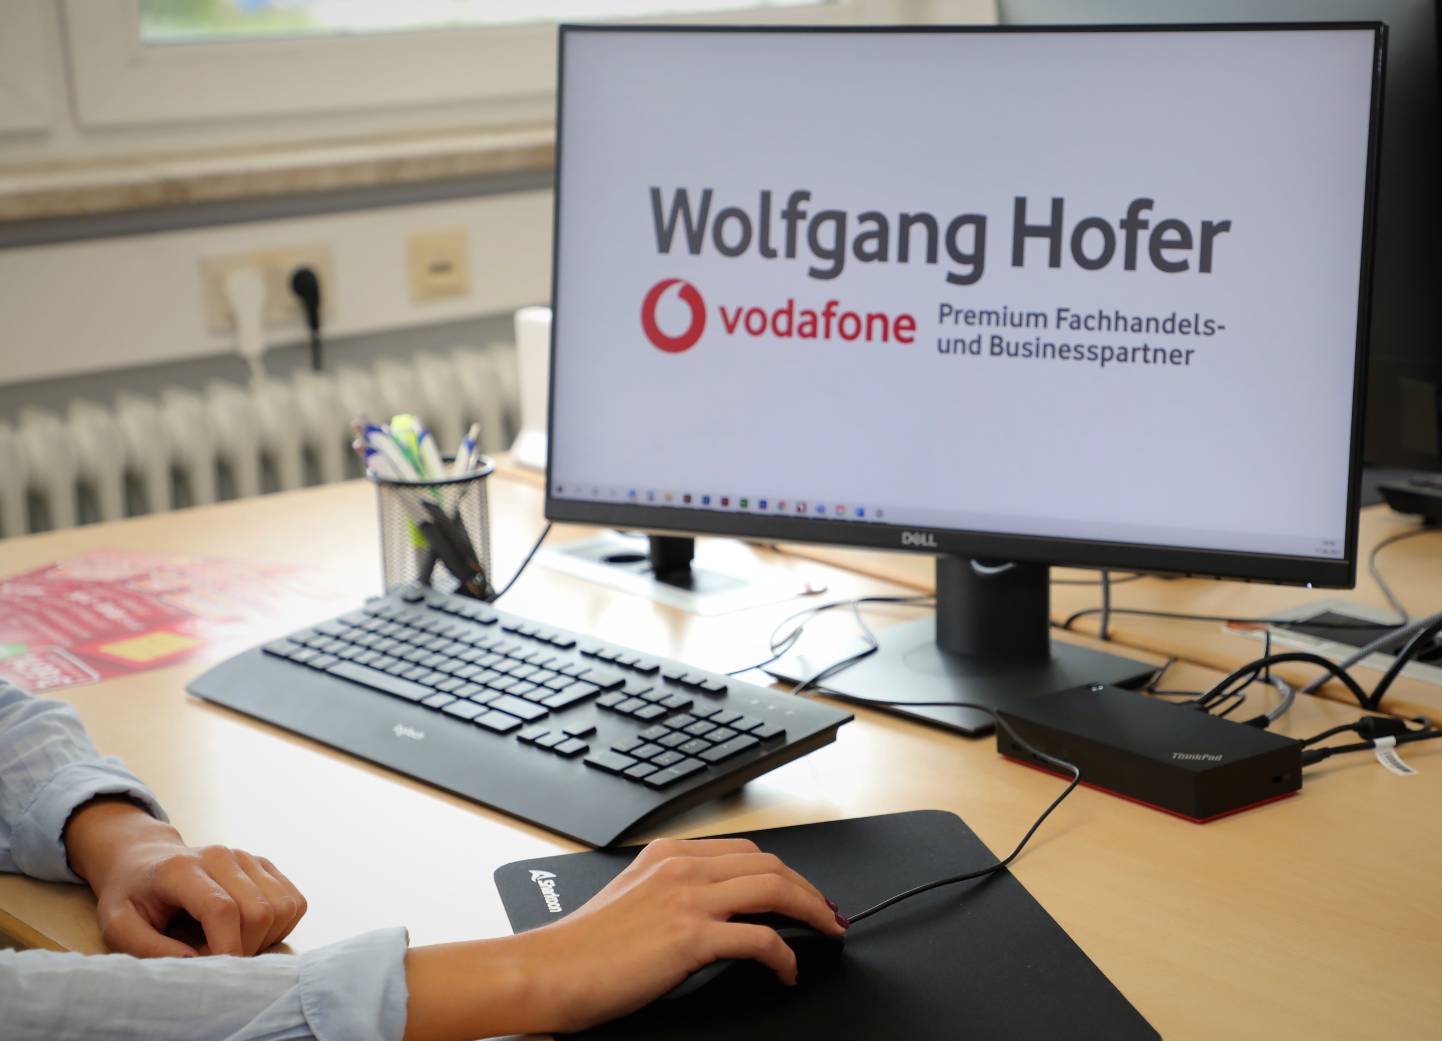 Wolfgang Hofer Vodafone Nürnberg